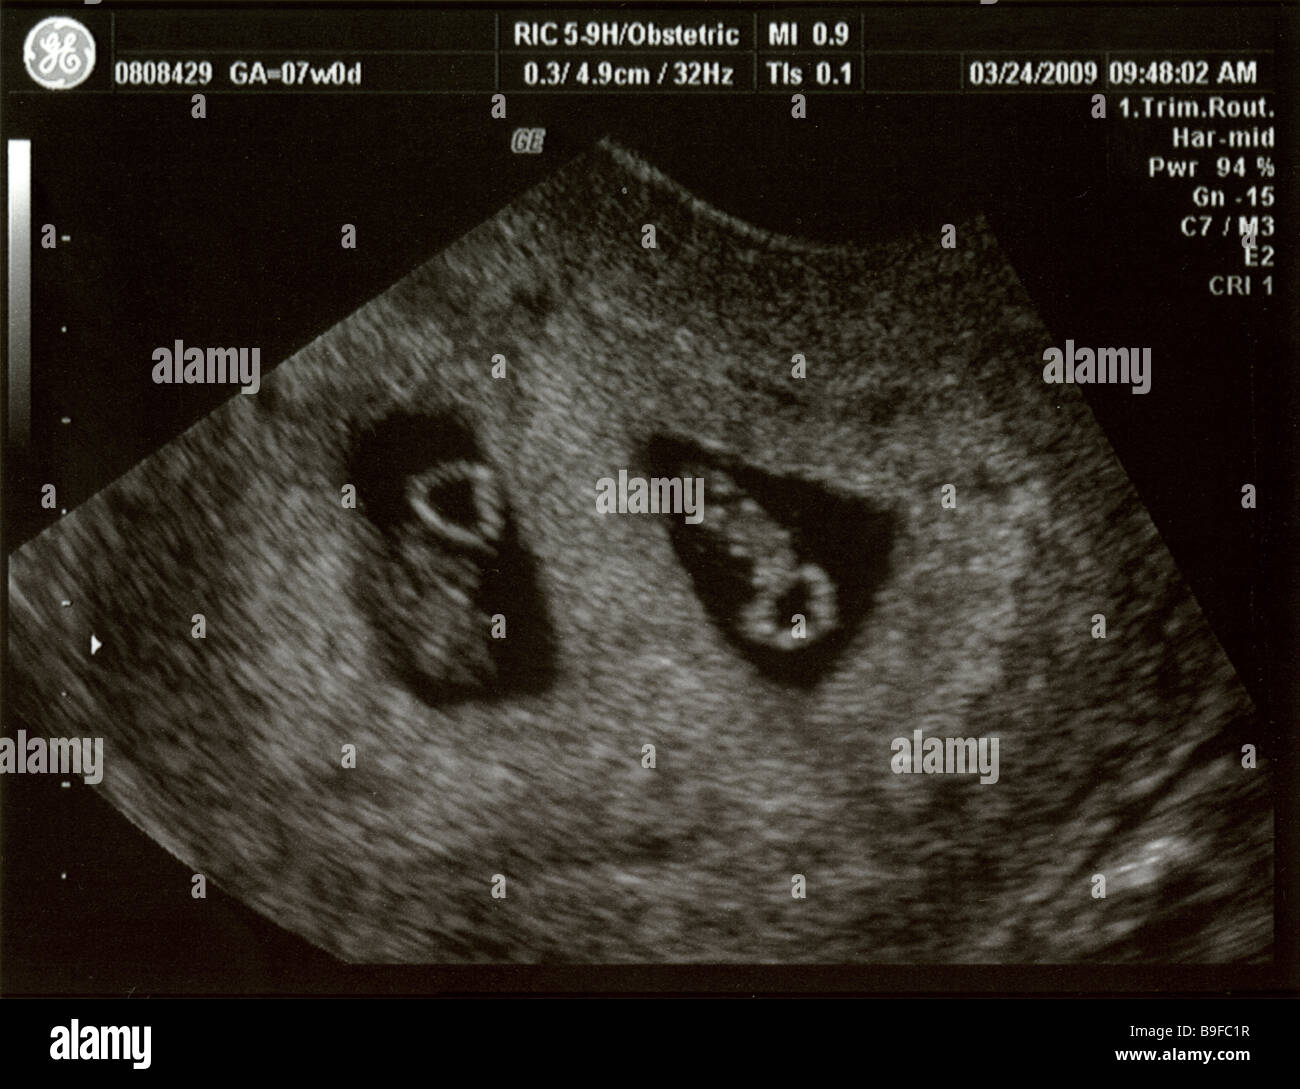 Ecografia che mostra lo sviluppo fetale di gemelli fraterni a 7 settimane, concepiti tramite fecondazione in vitro. Foto Stock